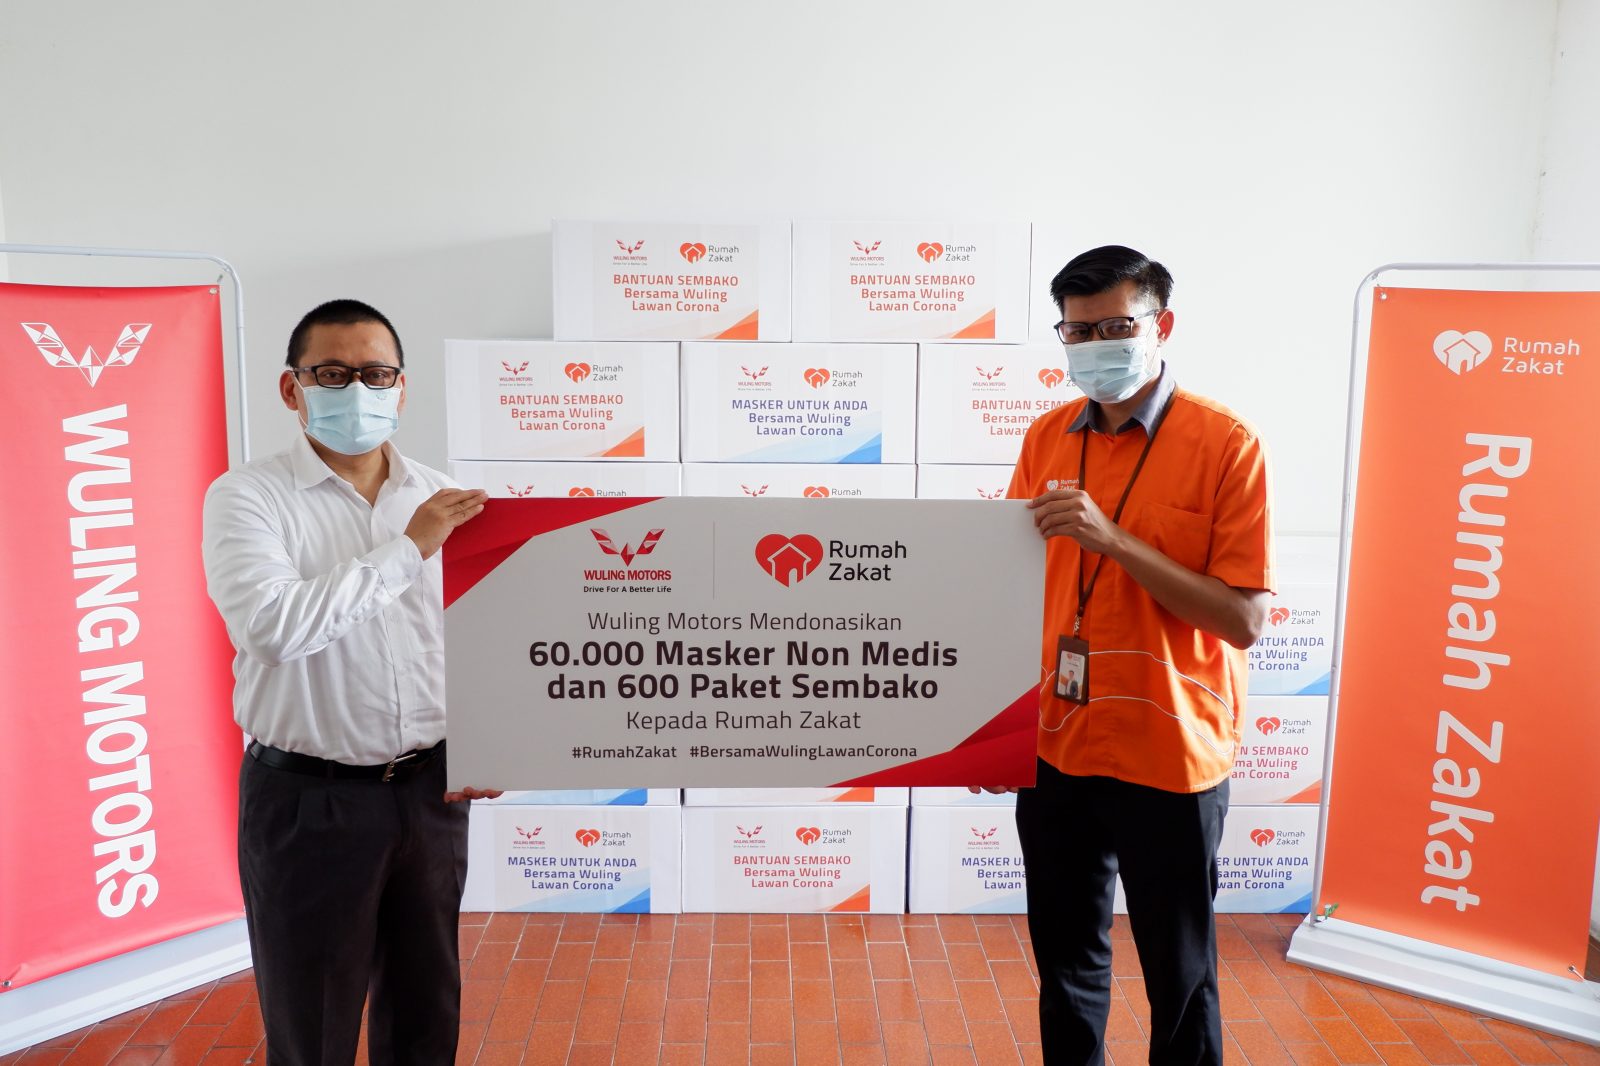 Image Wuling Gandeng Rumah Zakat untuk Donasikan Masker Non-Medis dan Sembako